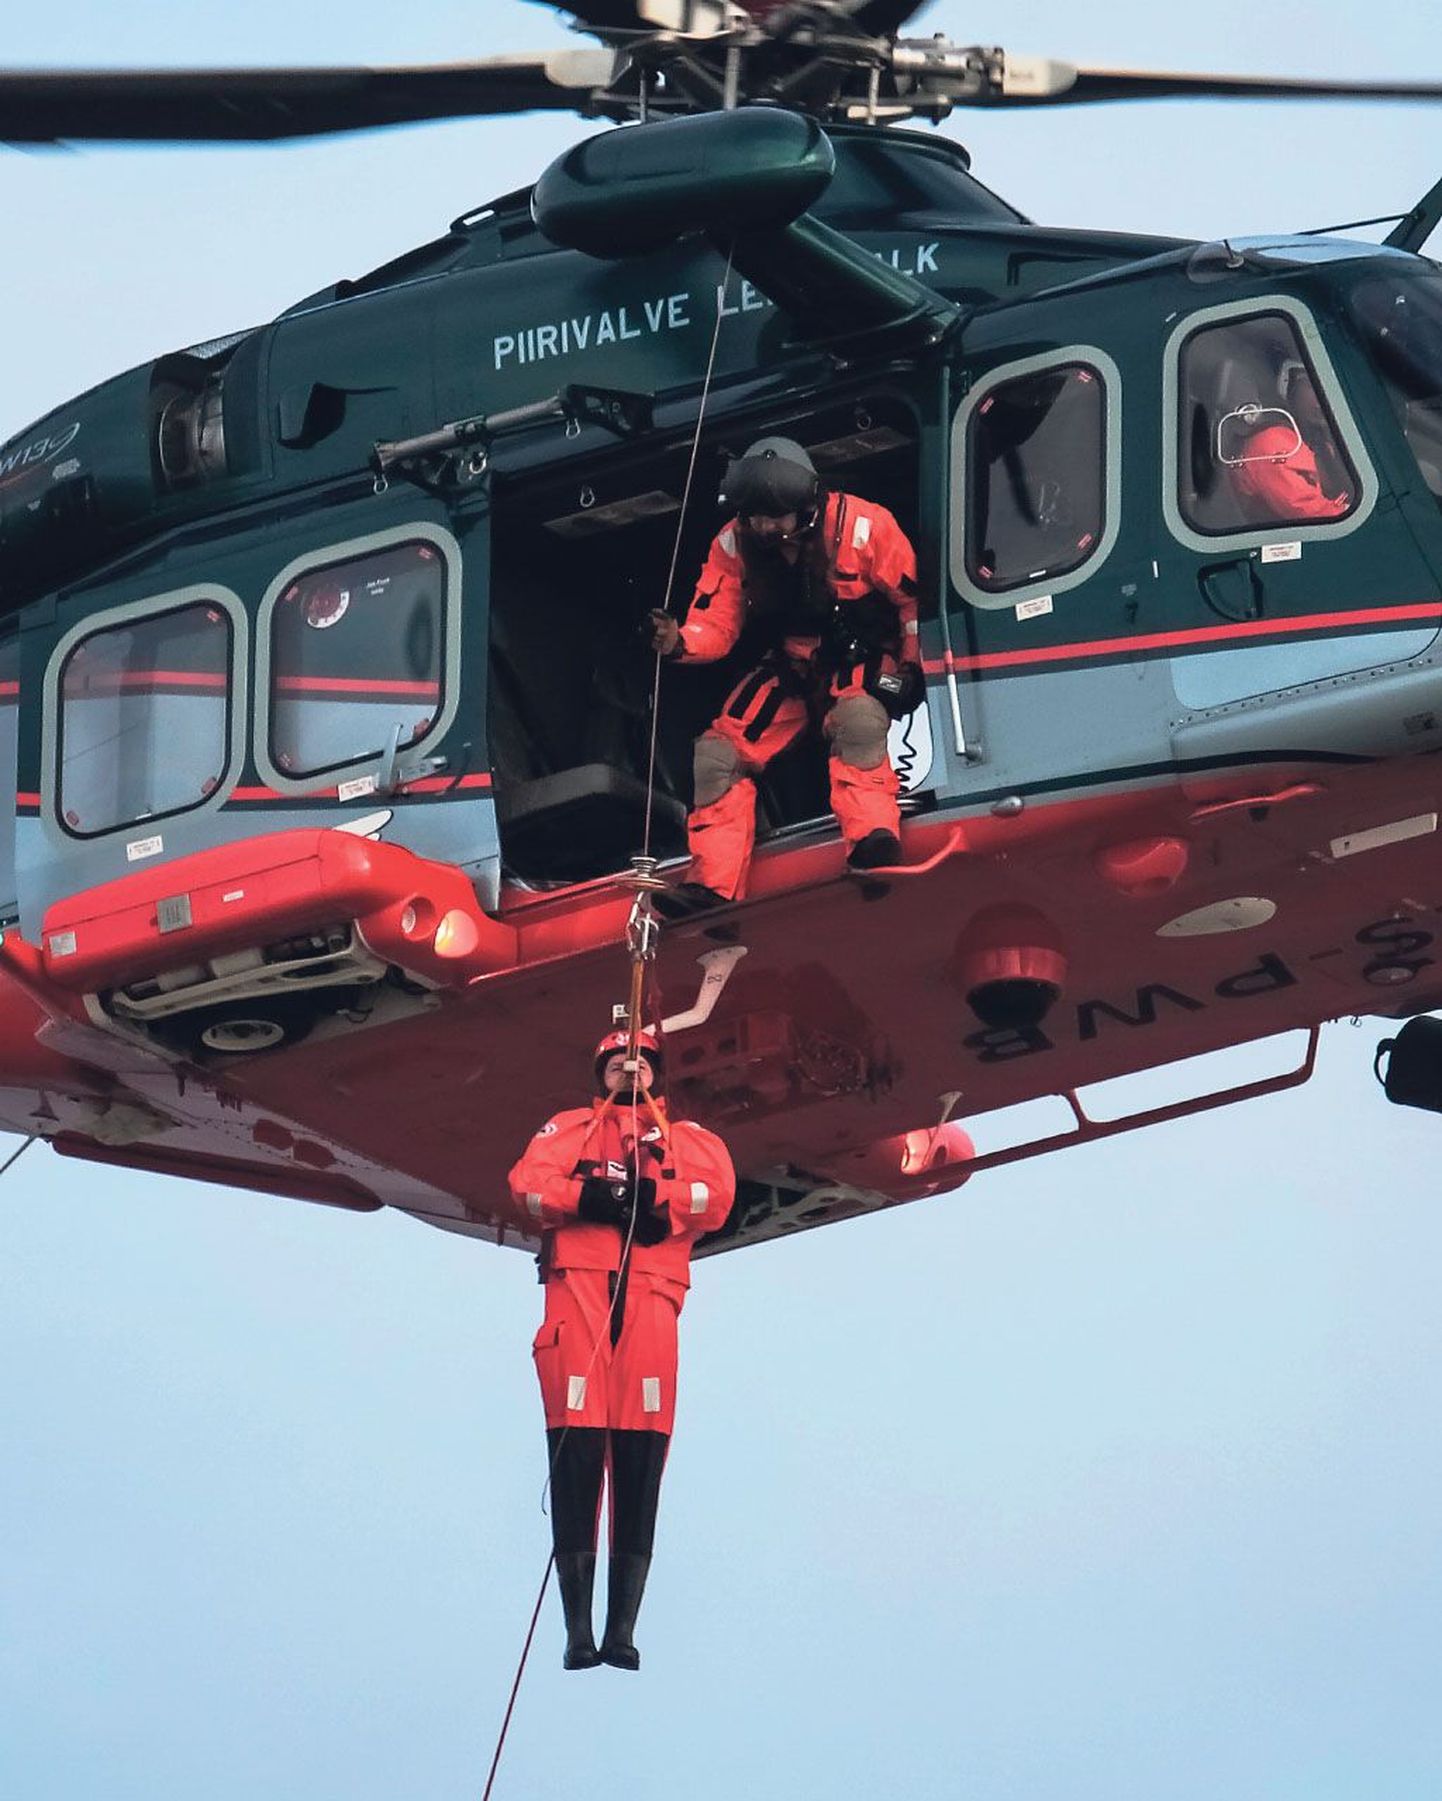 Iga päästeüksus treenib igapäevase teenistuse kõrvalt regulaarselt ja võimalusel kasutatakse treeninguks ka lennusalga helikopterit.